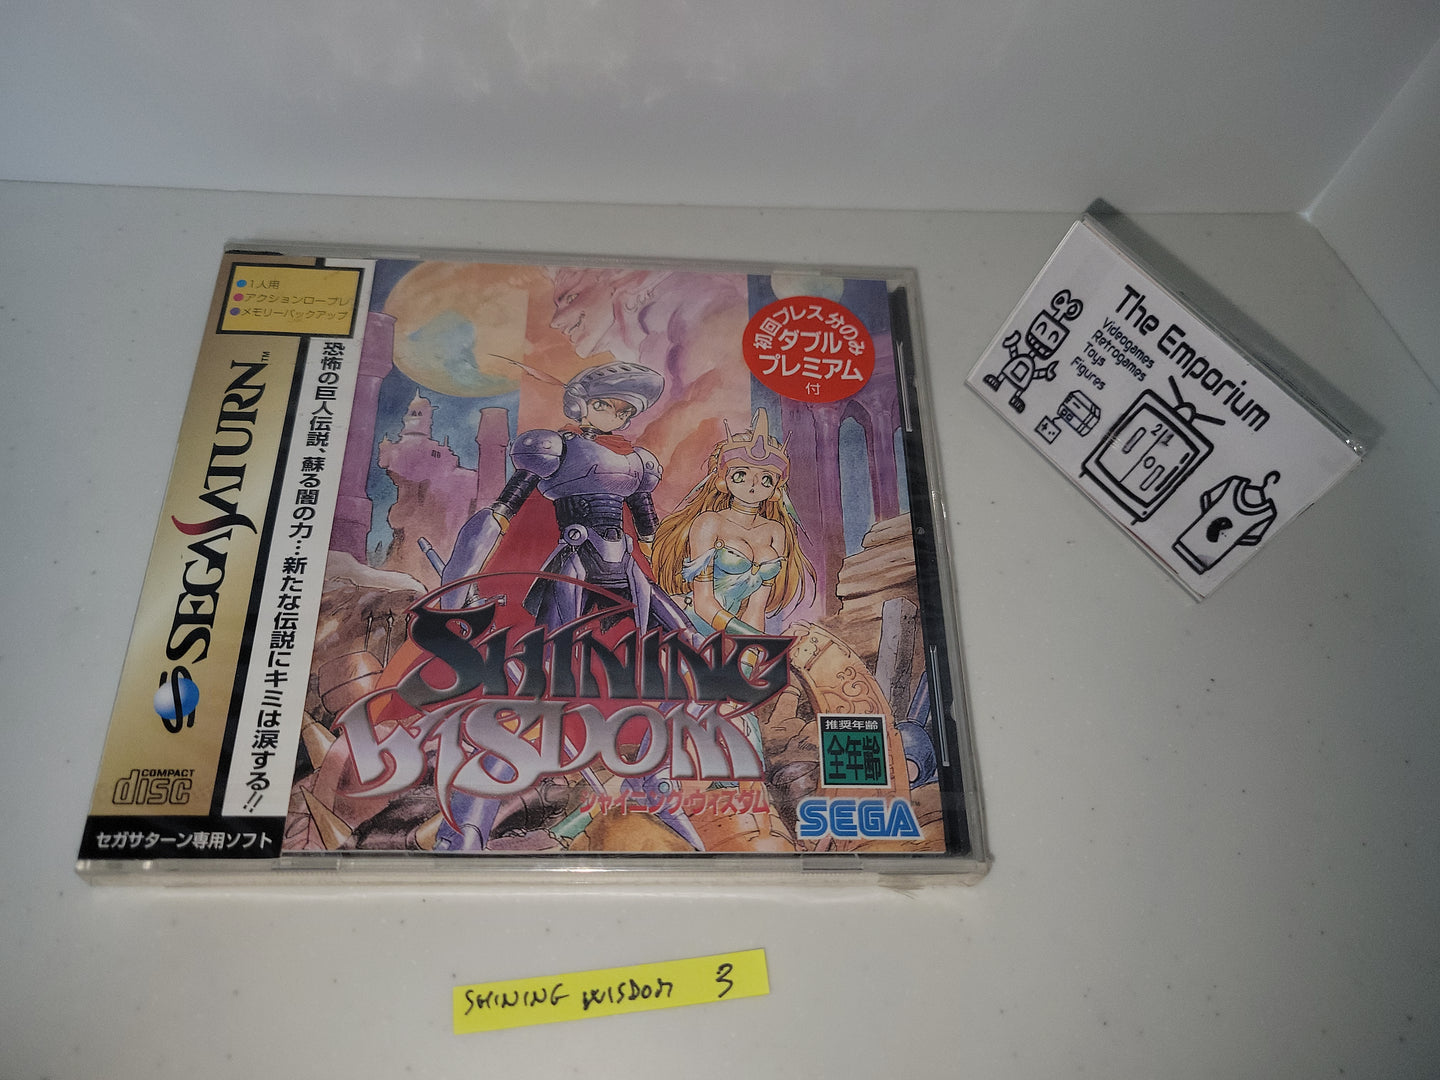 Shining Wisdom - Sega Saturn sat stn